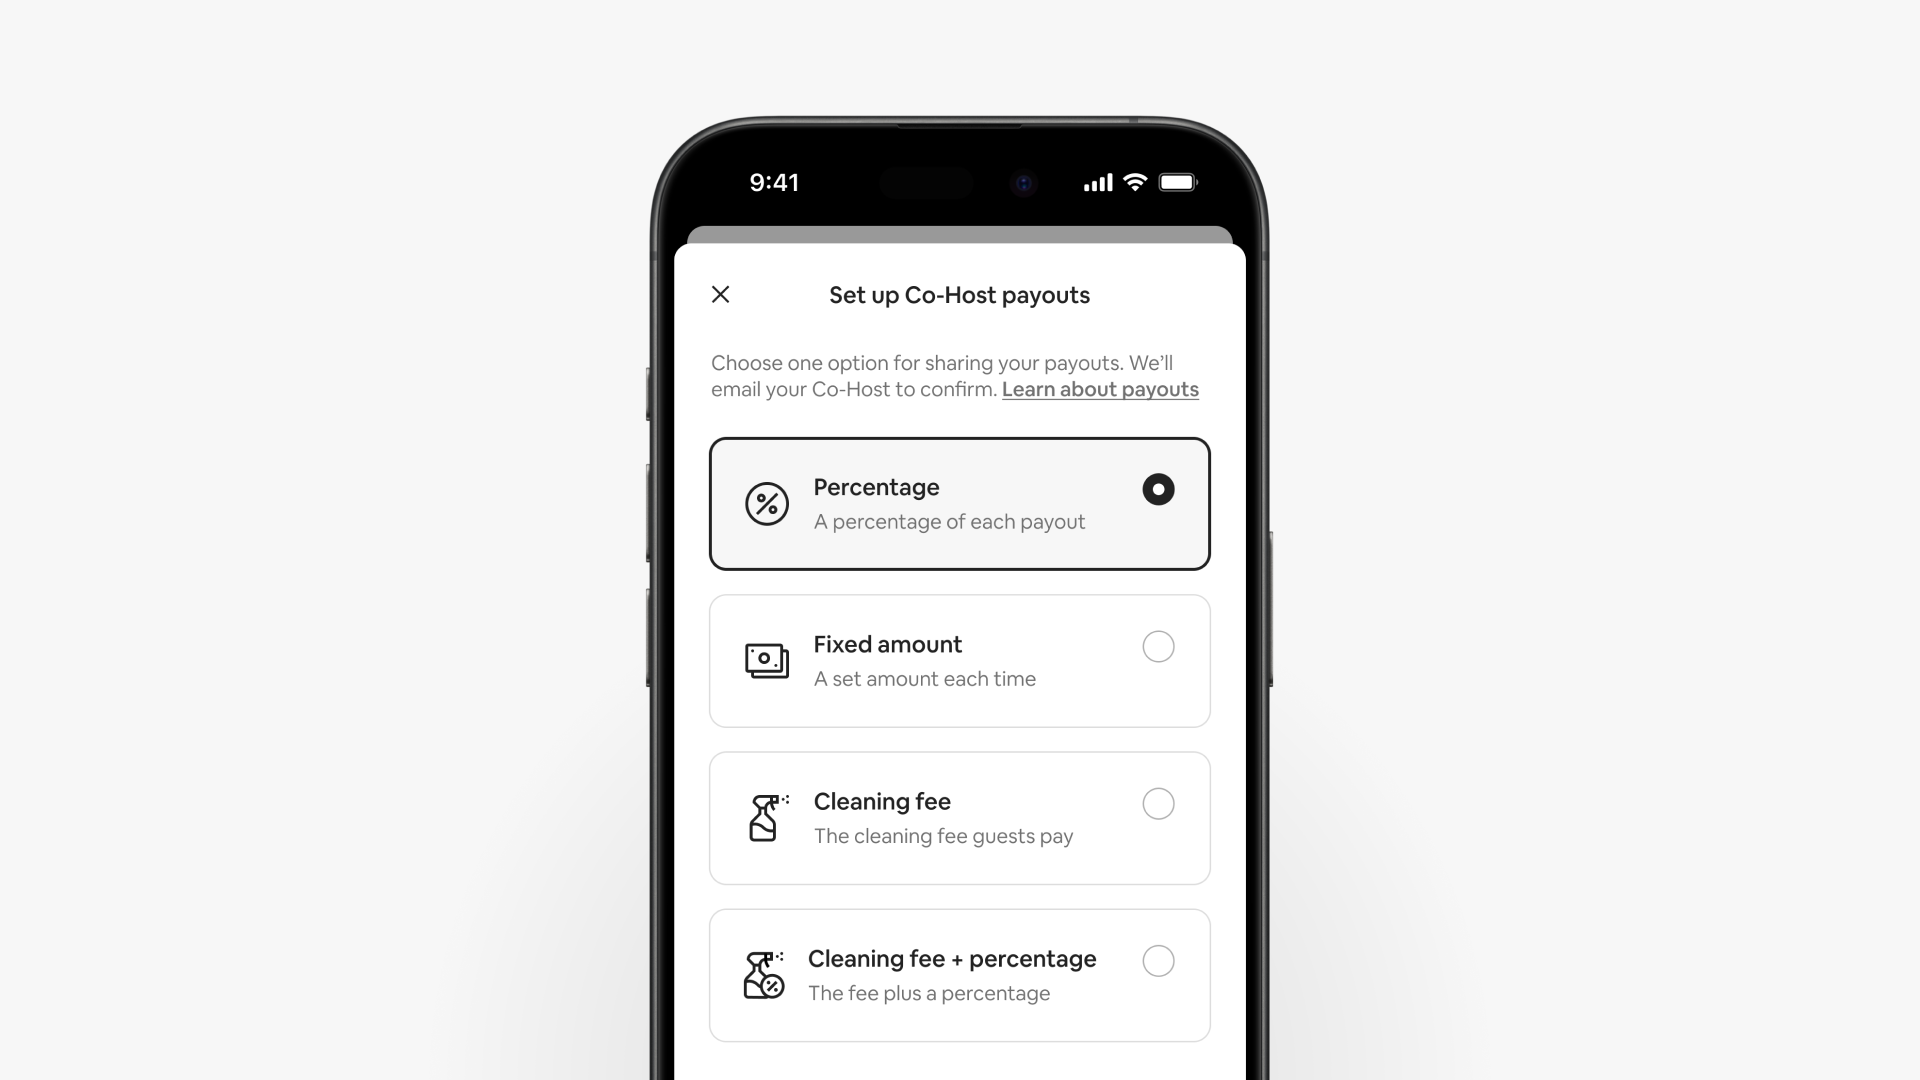 En smarttelefonskjerm viser siden for medvertsutbetalinger, hvor man kan velge mellom fire forskjellige utbetalingsalternativer.